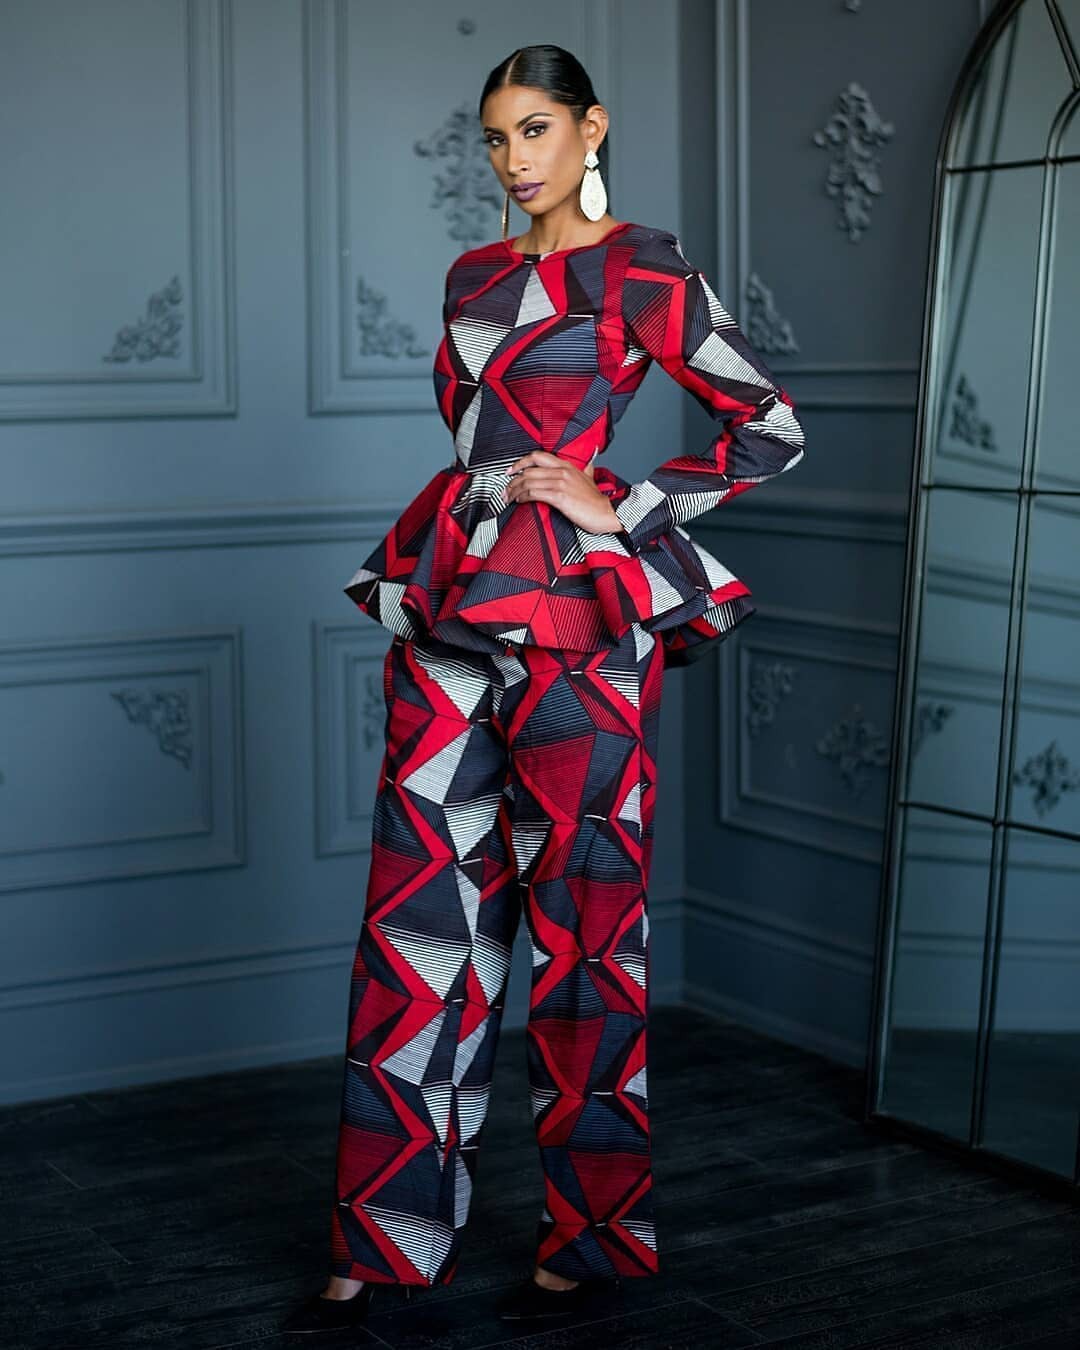 Inspiración caliente del vestido de Ankara para la mujer: moda africana,  Vestidos Ankara,  Atuendos Ankara,  Atuendo Africano,  Trajes Africanos,  Estilos Asoebi,  vestidos coloridos,  Vestido Estampado  